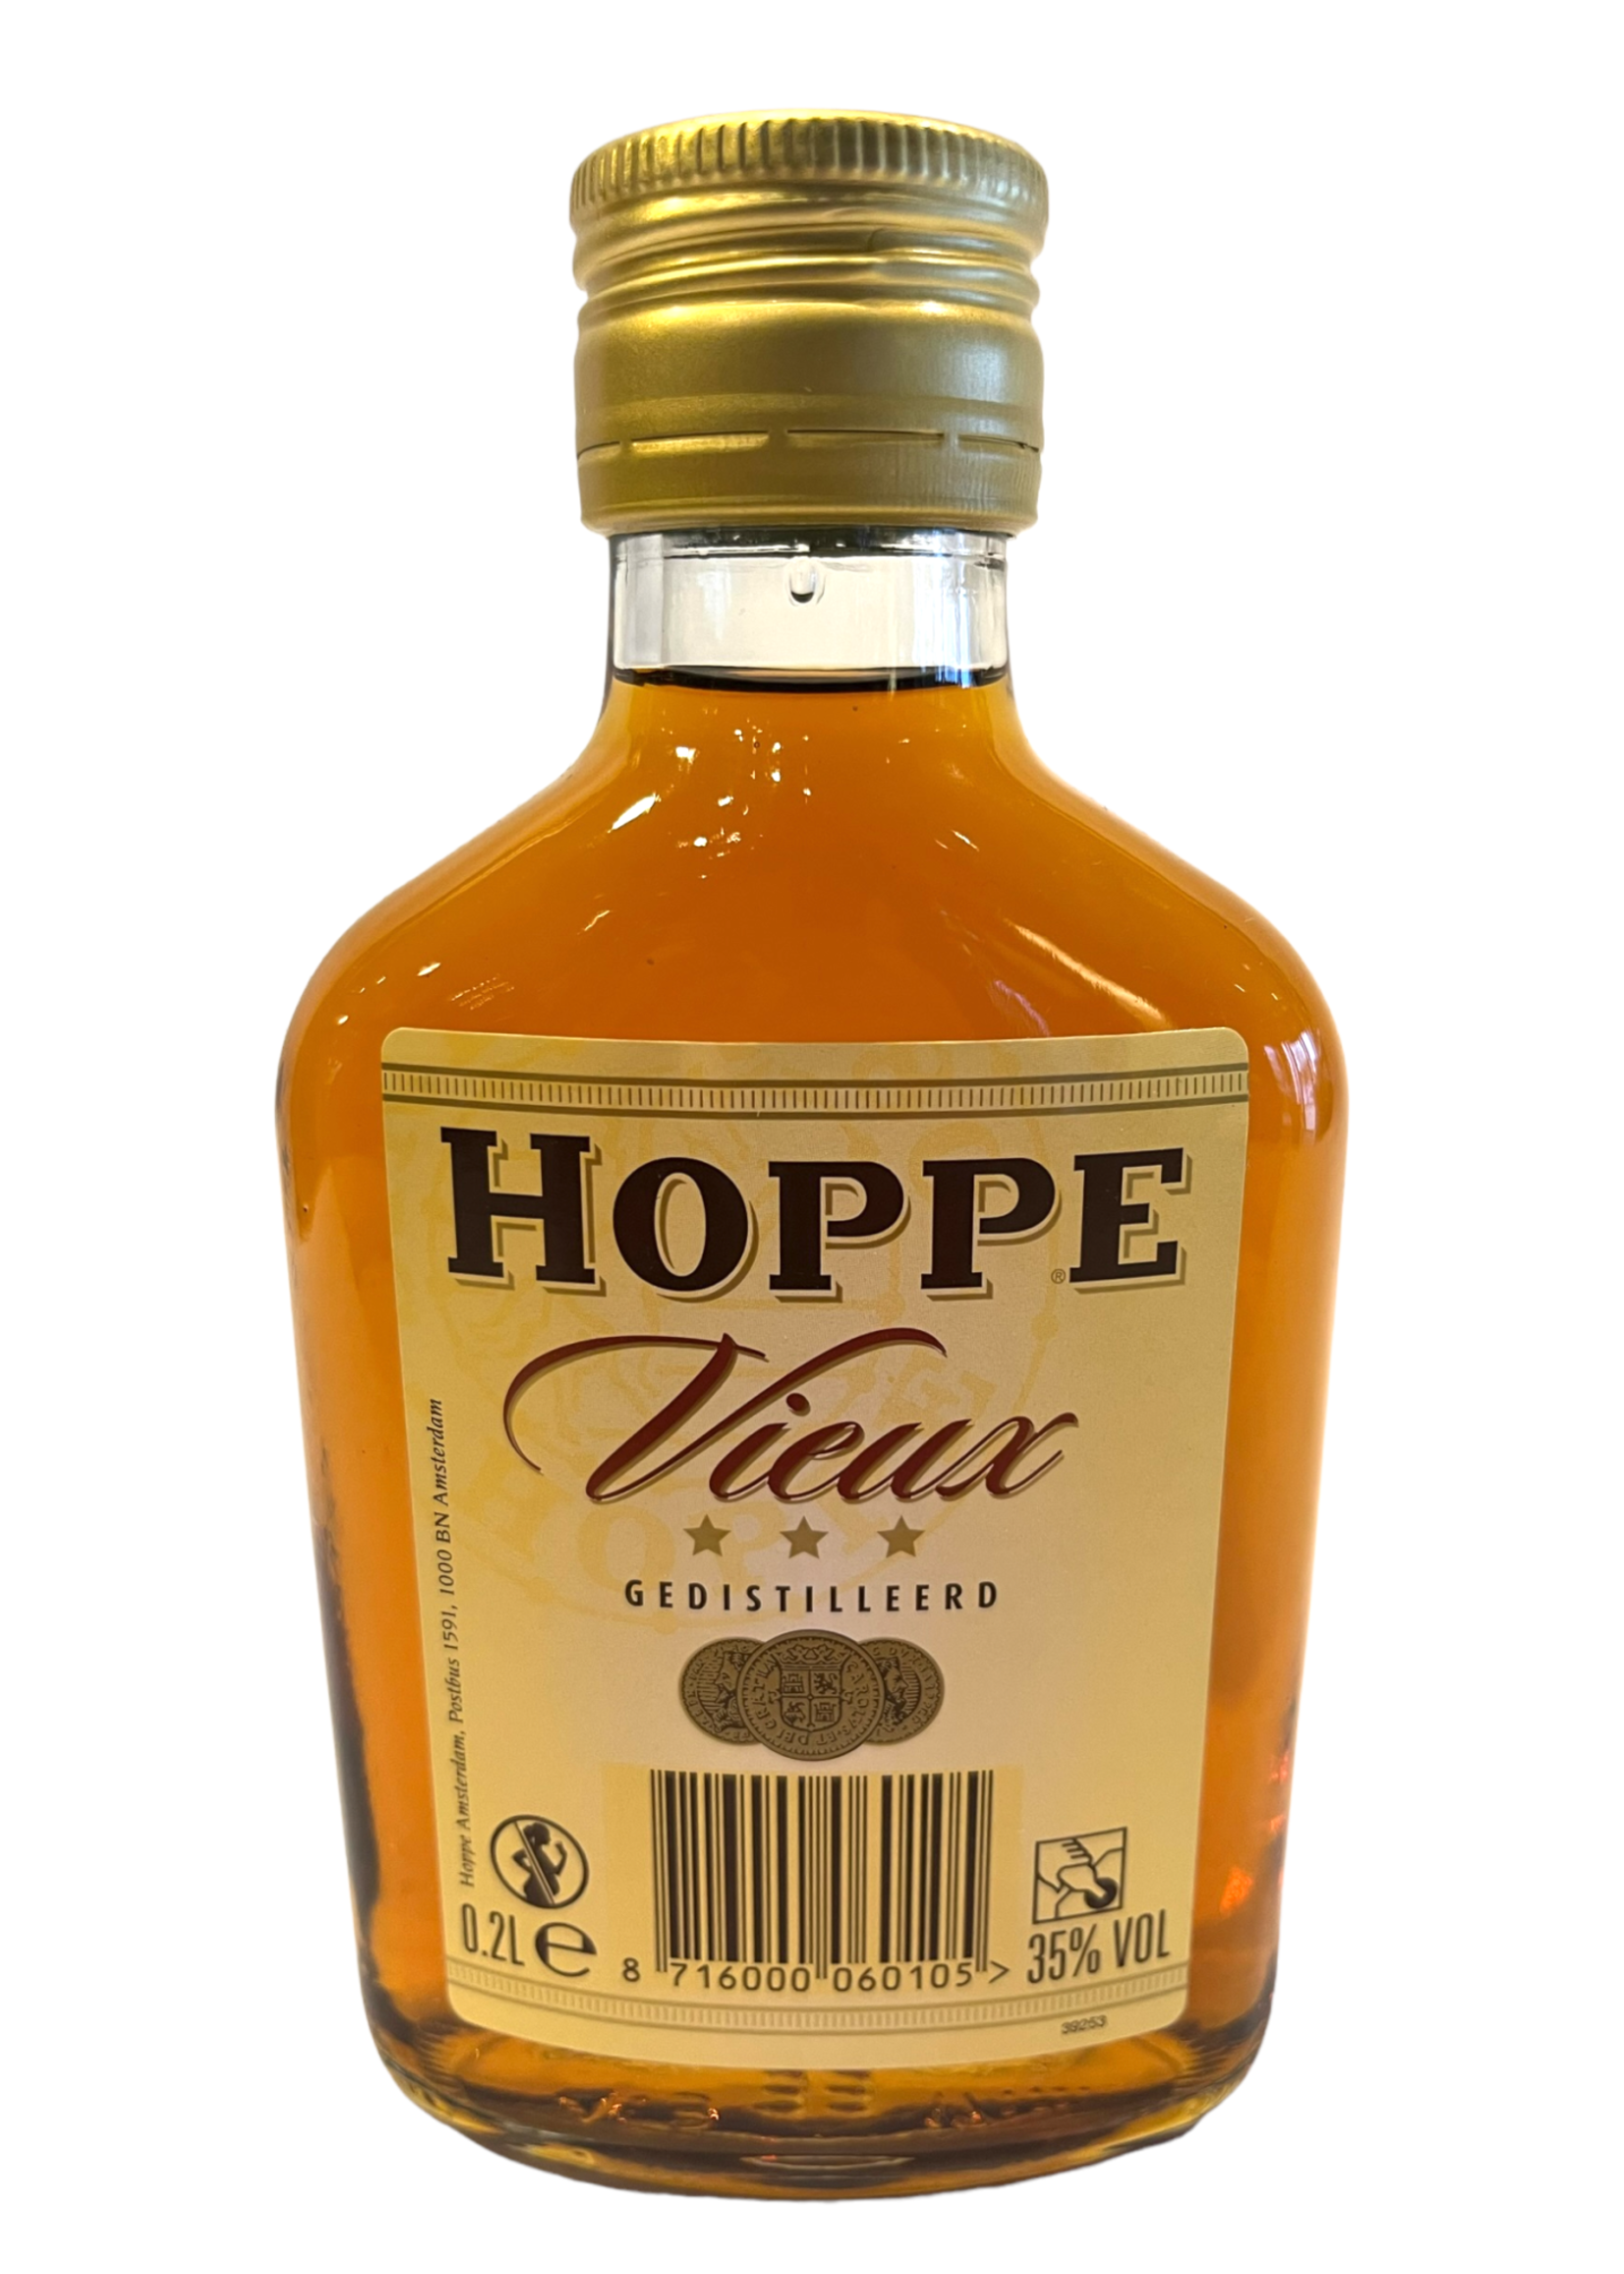 Hoppe Vieux 0.2L